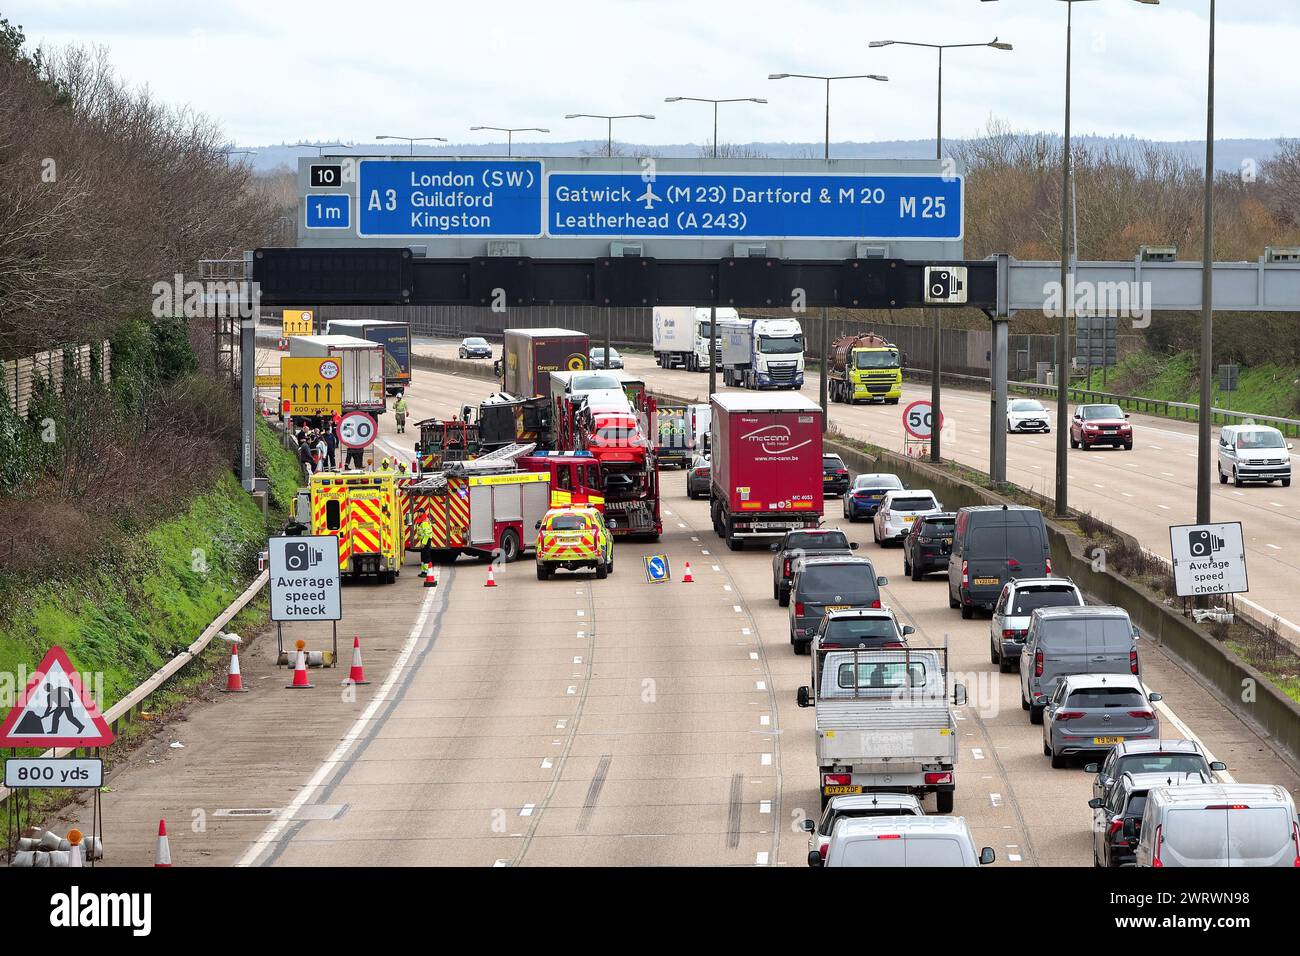 Un incidente stradale in avvicinamento allo svincolo 10, Wisley sull'autostrada M25 con servizi di emergenza presenti Surrey Inghilterra Regno Unito Foto Stock